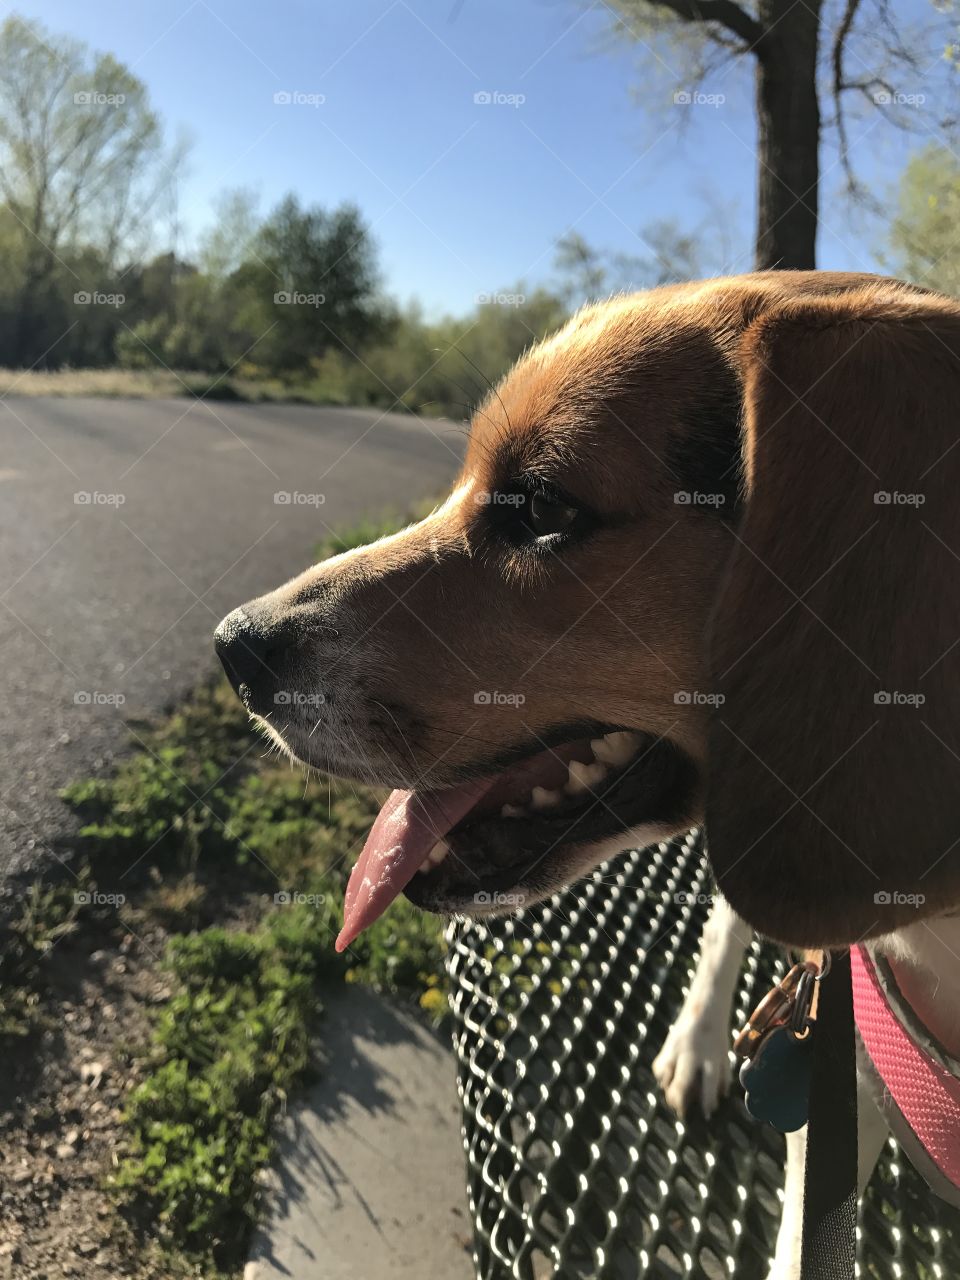 Lola on a walk